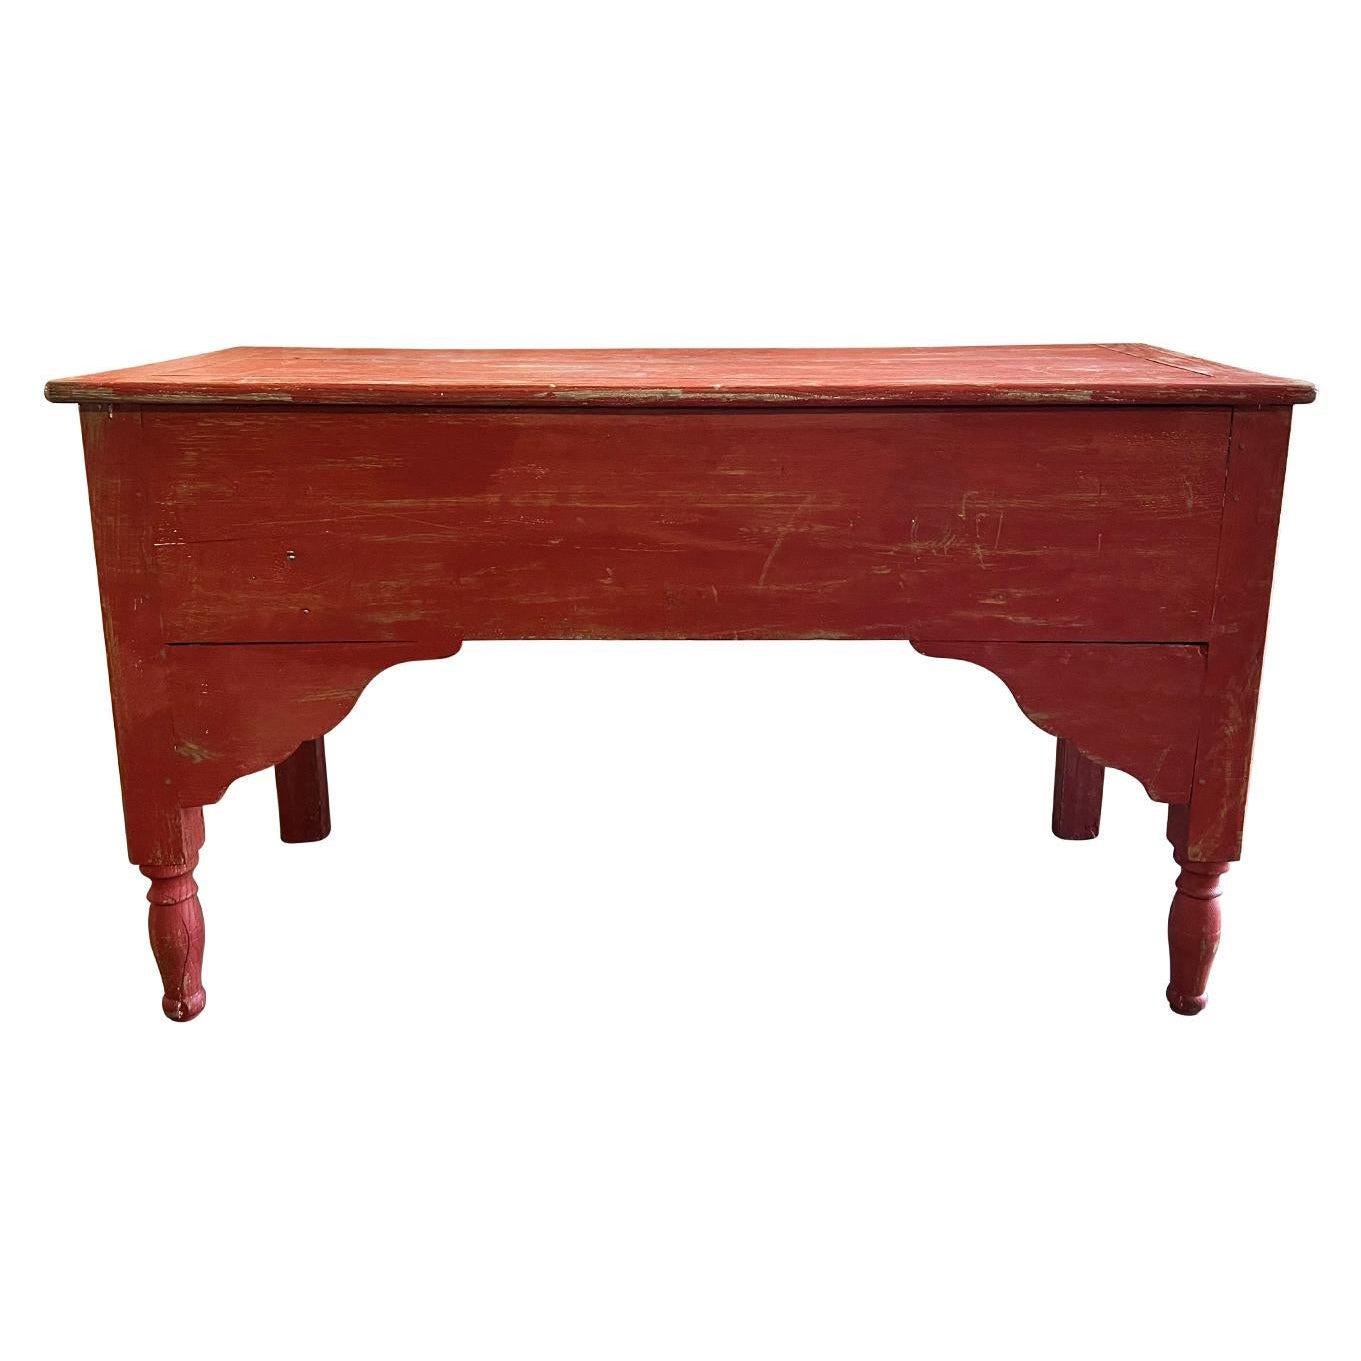 Console française ancienne en chêne rouge du 19ème siècle, table de cuisine provençale